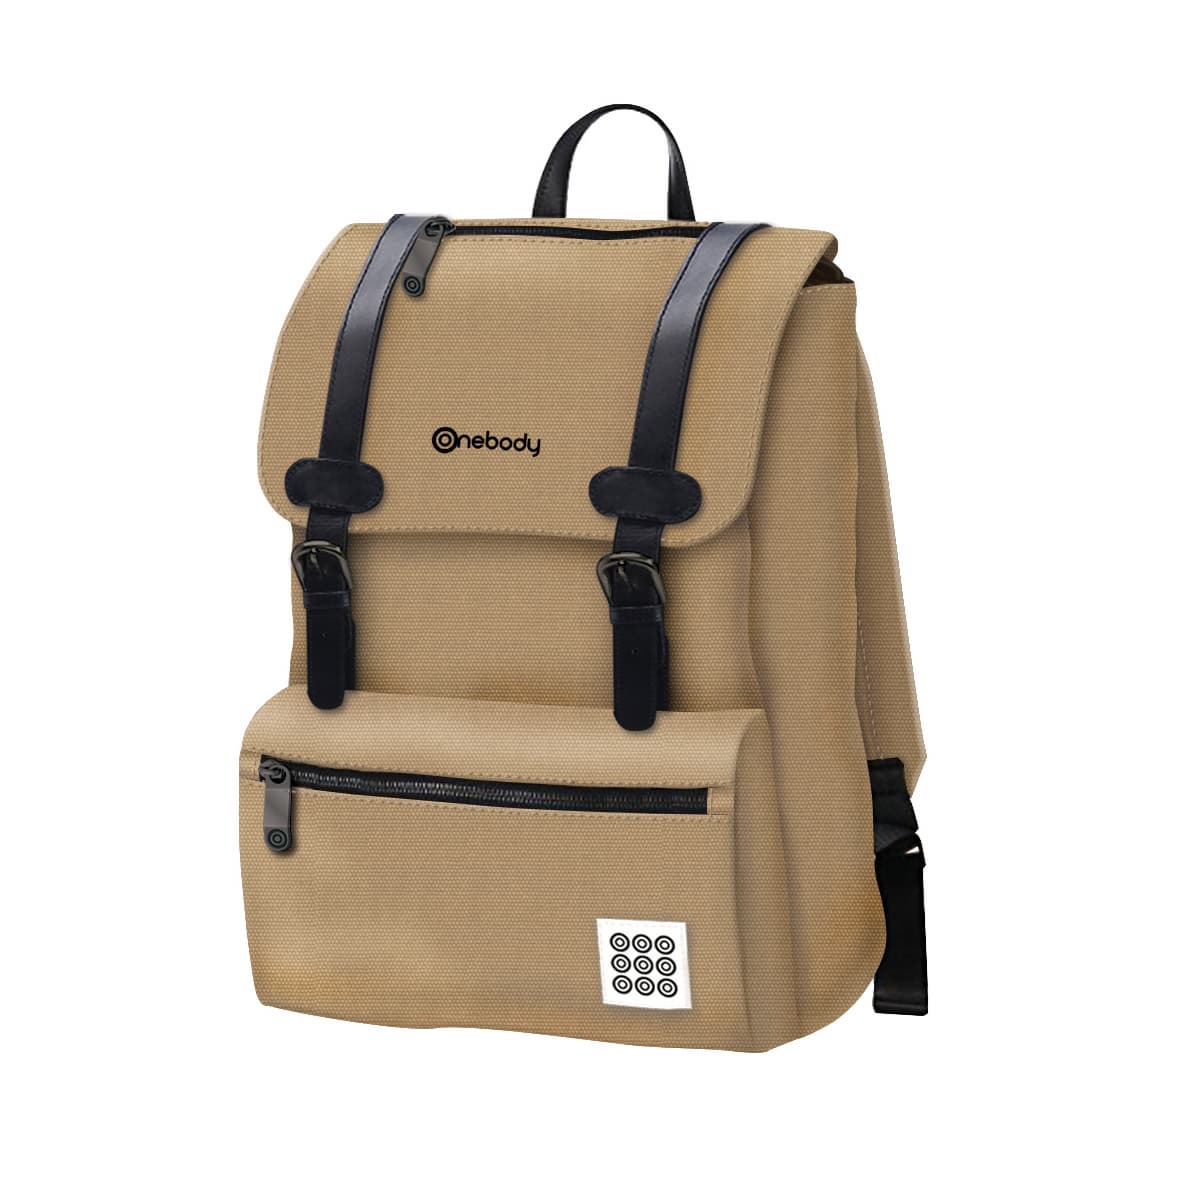 Onebody Waterproof Multi_backpack_ Laptop Bag_02